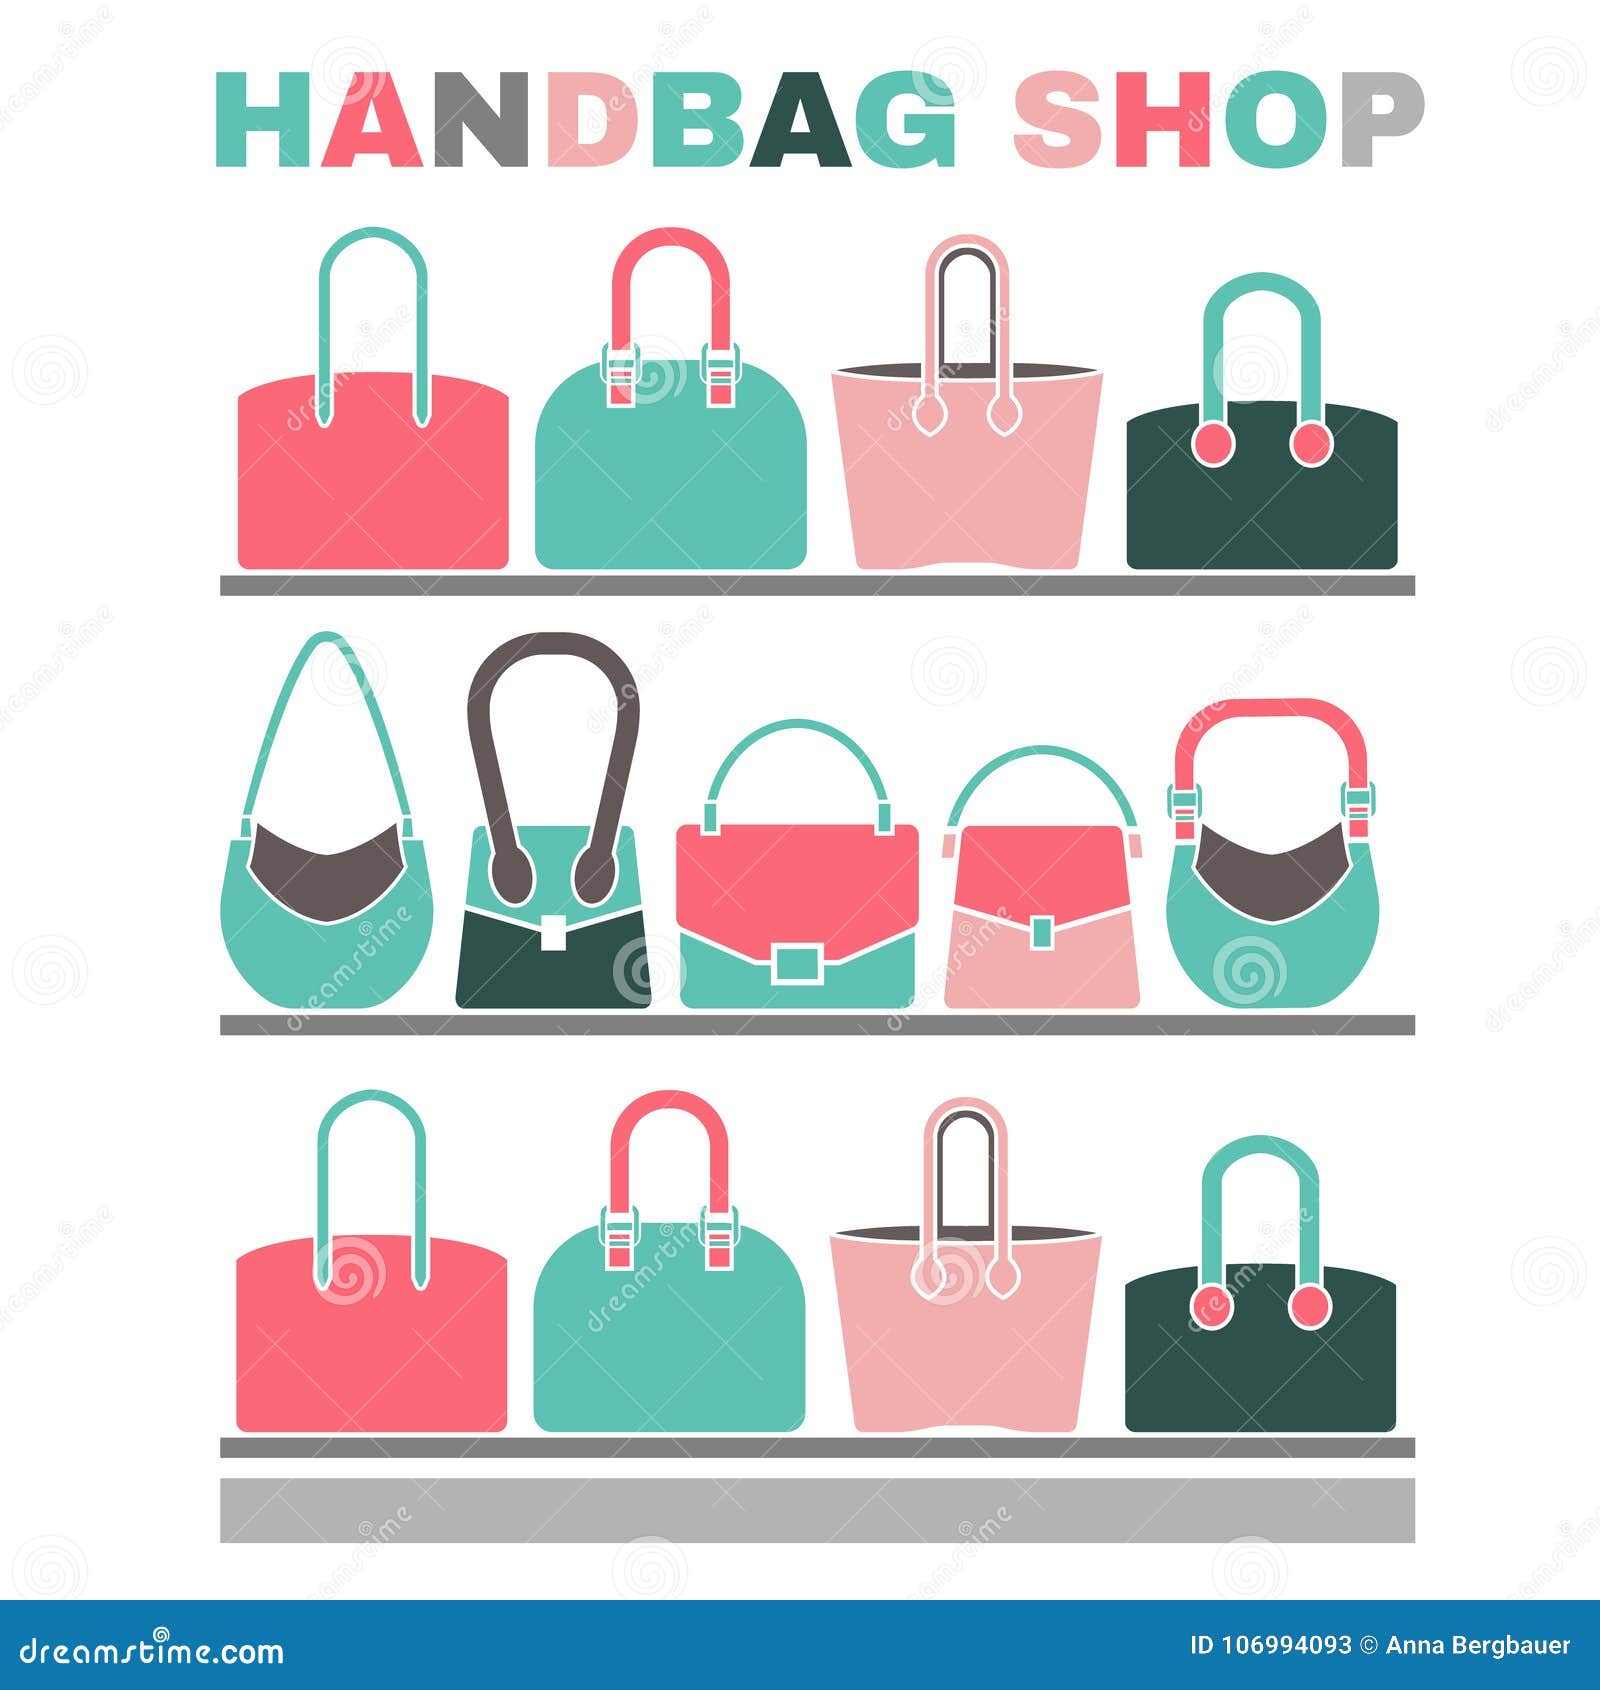 Hand bag - Free fashion icons